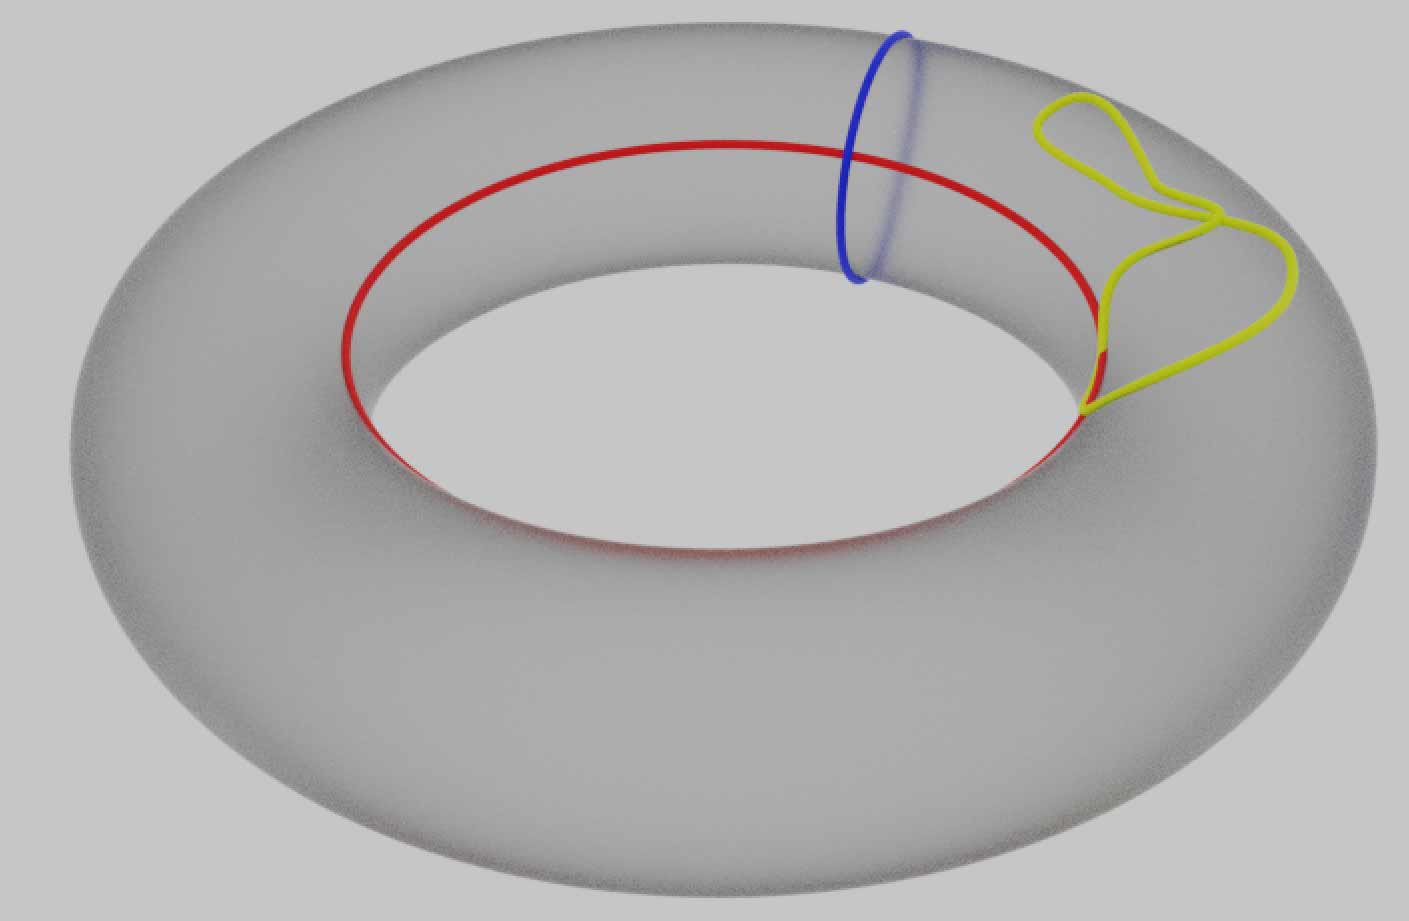 二维的圆环面$T^2$上的不可缩路径（红色纬线与蓝色经线）与可缩路径（黄色圈）